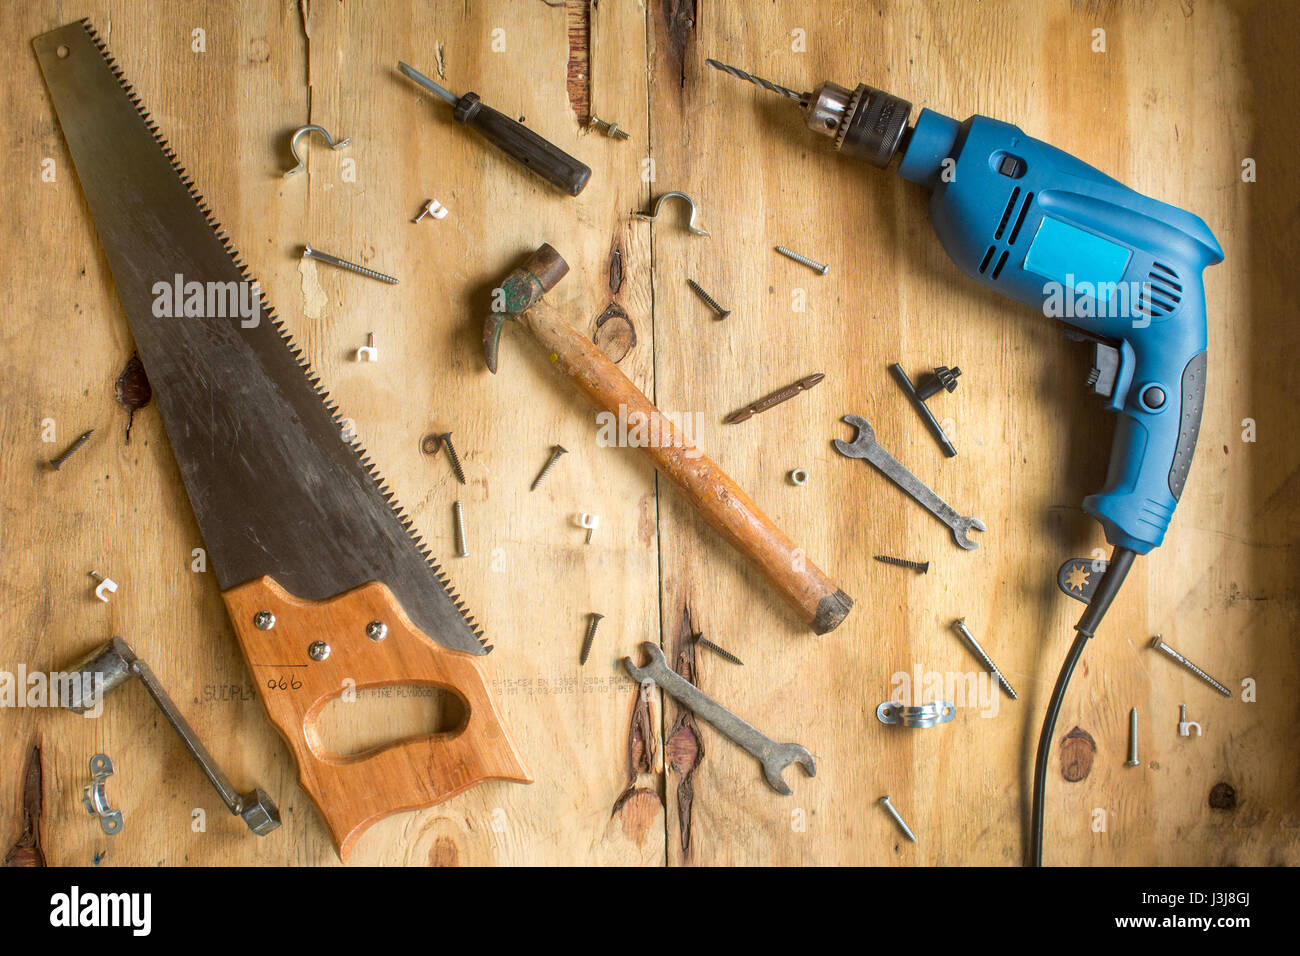 Martillo y tornillos en el fondo de madera Foto de stock